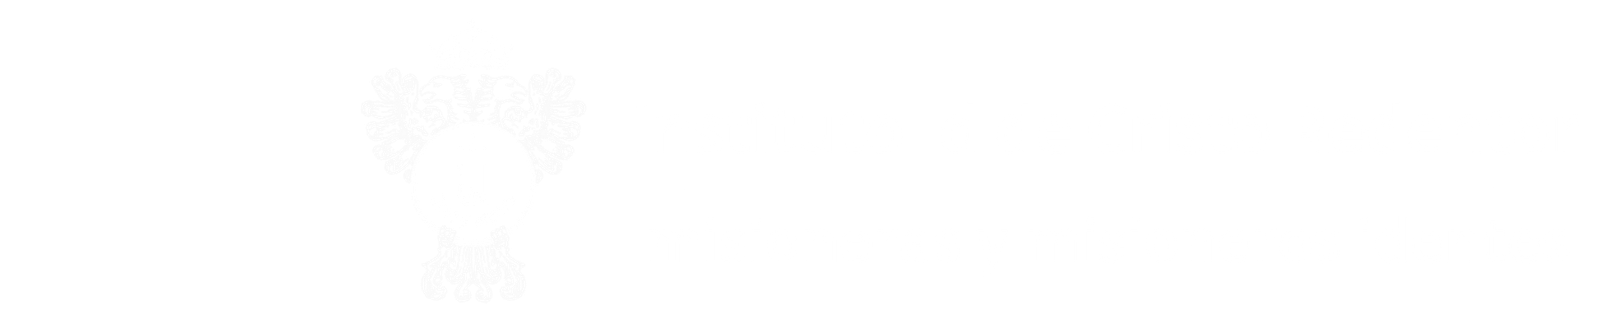 Instituto Id de Cristo Redentor